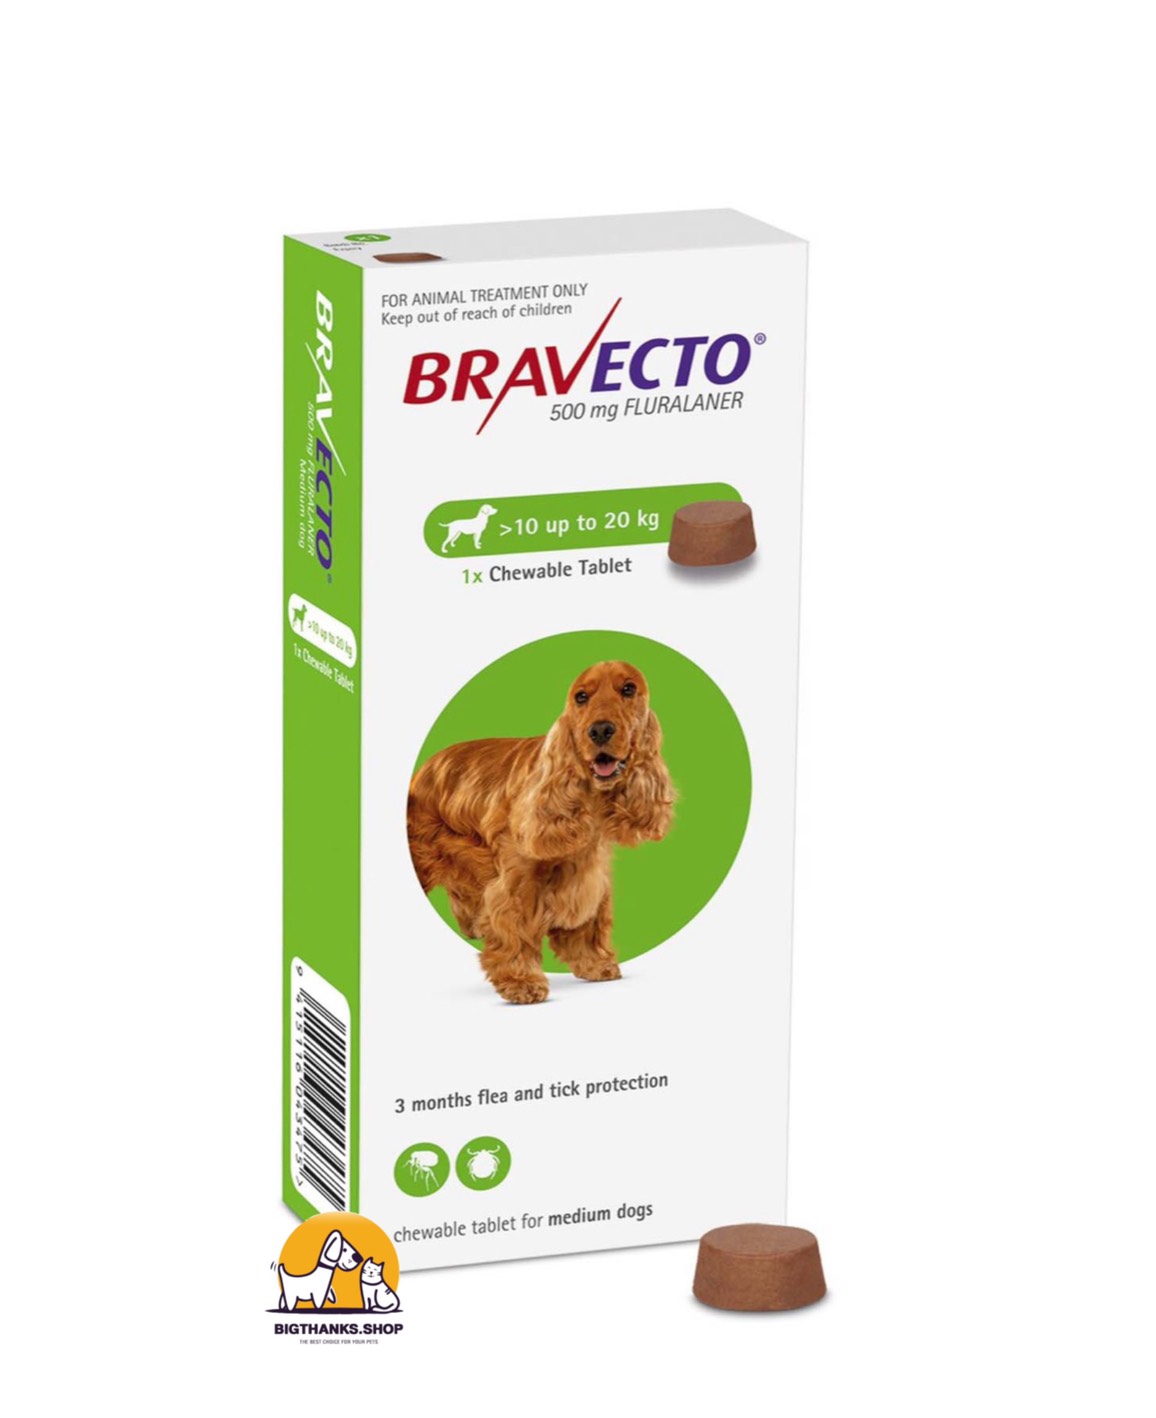 Bravecto กำจัดเห็บหมัด ไรขี้เรื้อน (คุม 3 เดือน) ชนิดเม็ด ขนาดสุนัข 10-20 กิโลกรัม 500 มิลลิกรัม หมดอายุ 02/2022